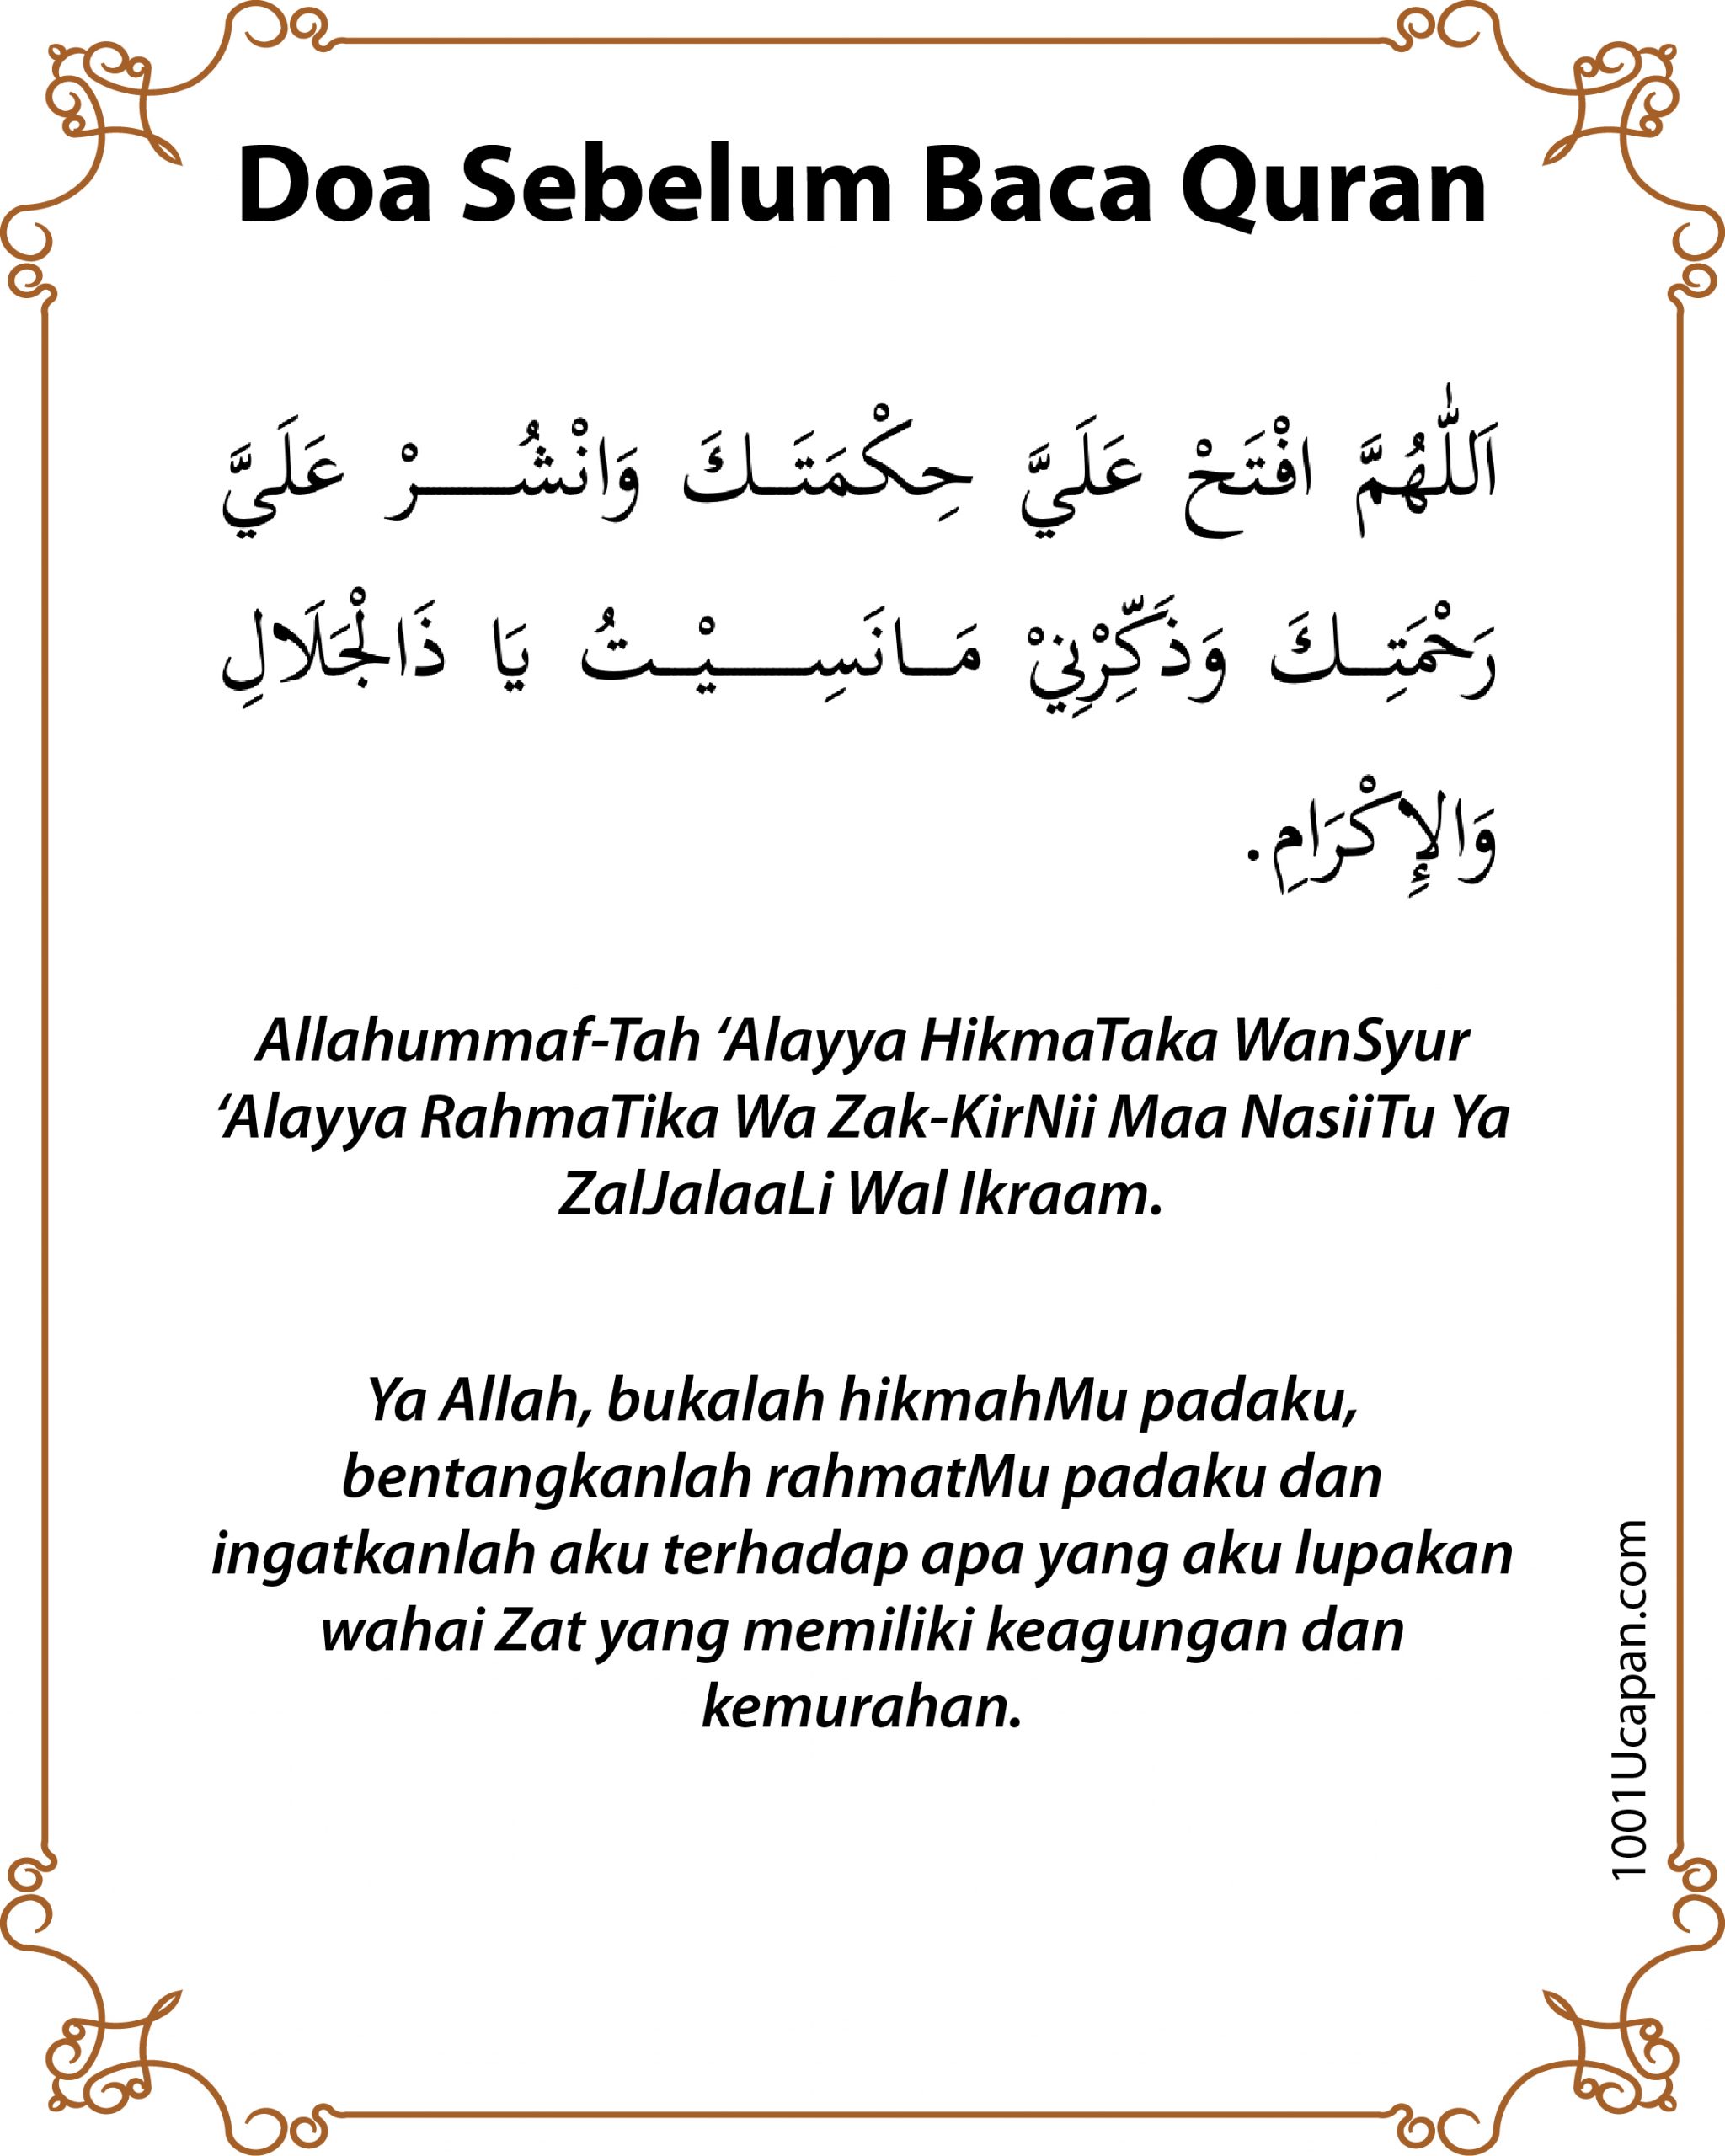 Doa Selepas Baca Quran PDF, Rumi dan Jawi - 1001 Ucapan